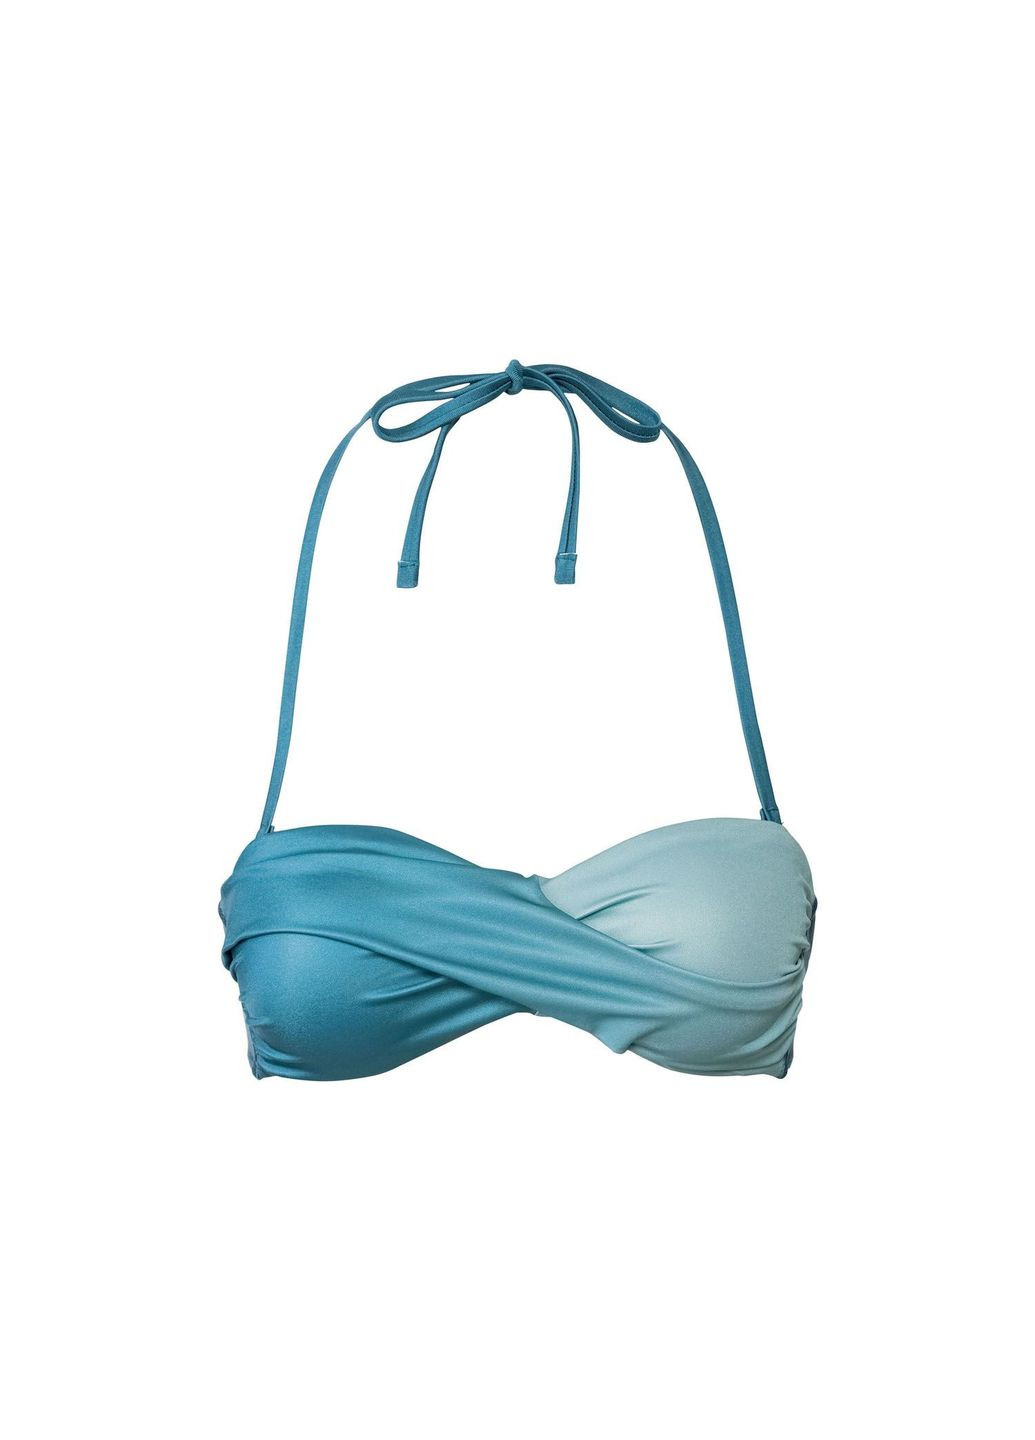 Бірюзовий купальник роздільний на підкладці для жінки lycra® 348526 34(xs) бірюза бікіні Esmara